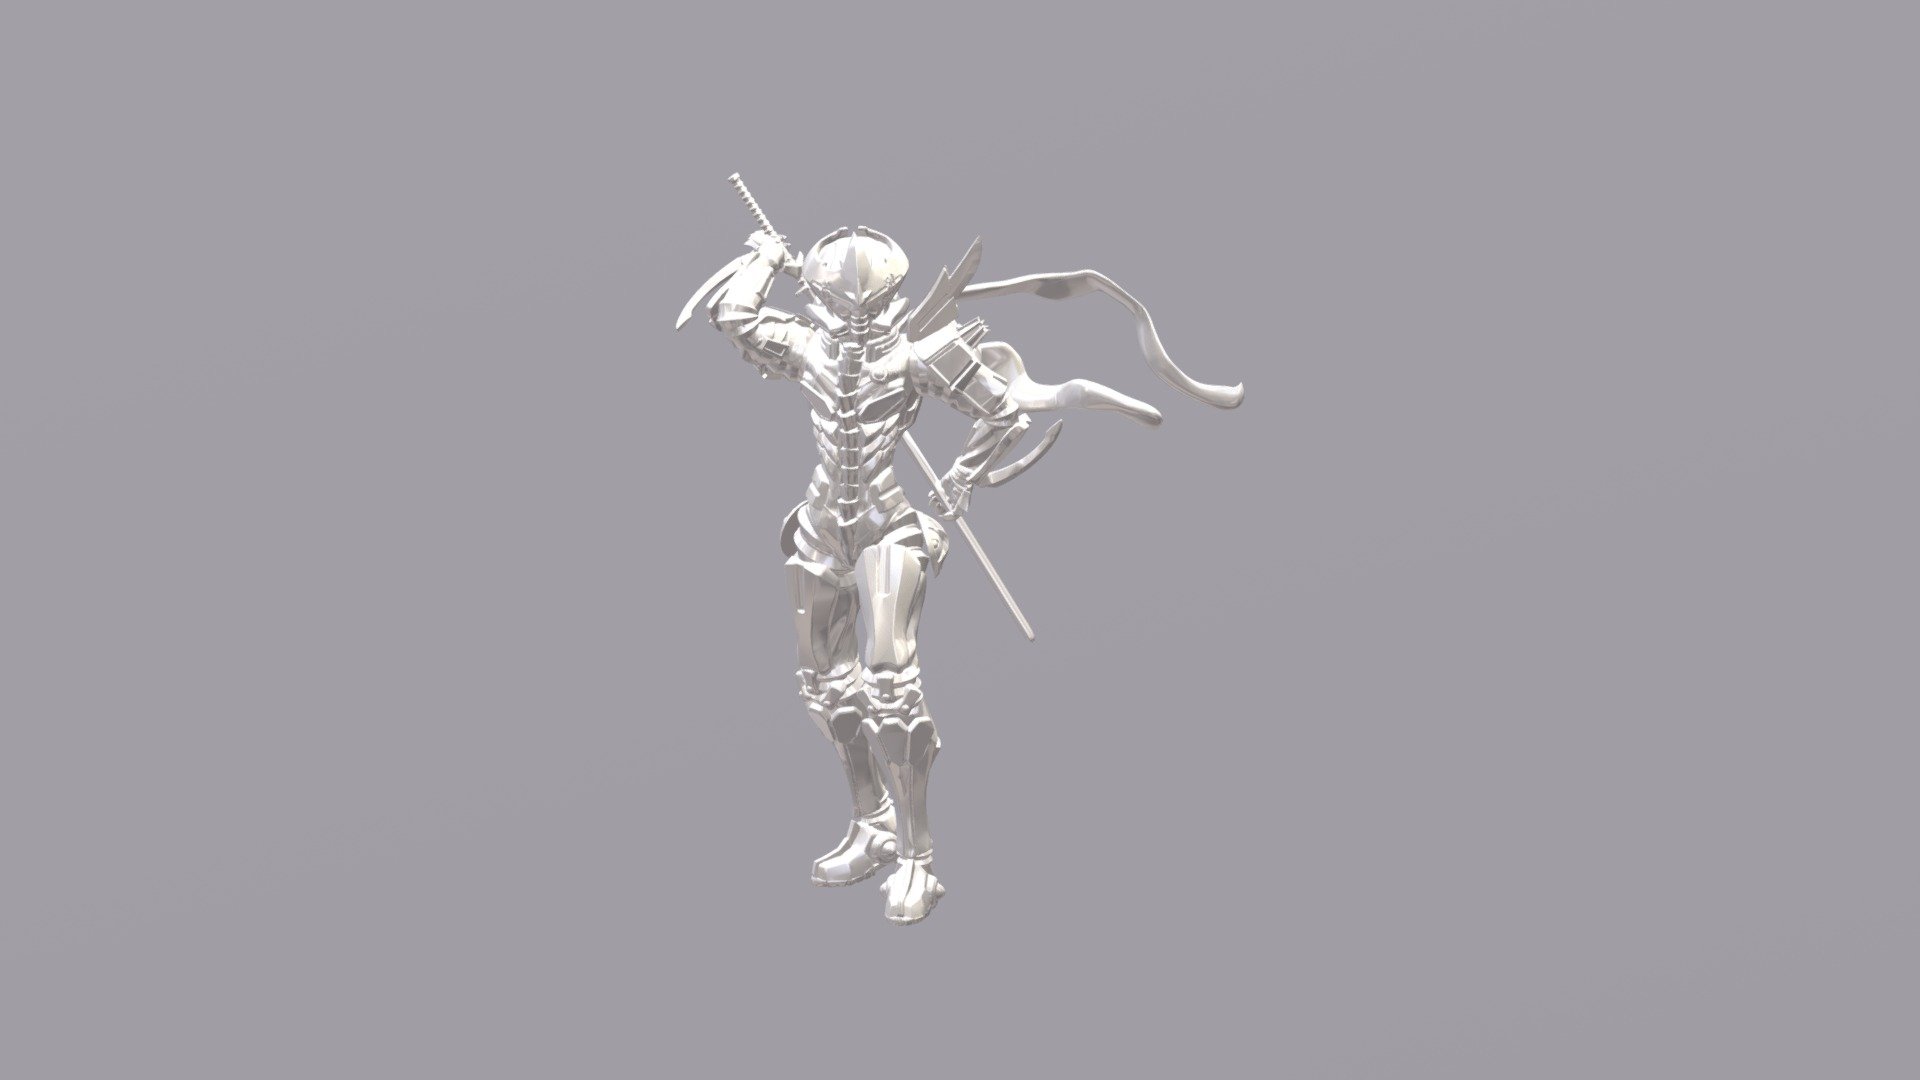 Reinforced exoskelton suit Raiden - 3D model by cyber1715 3d model